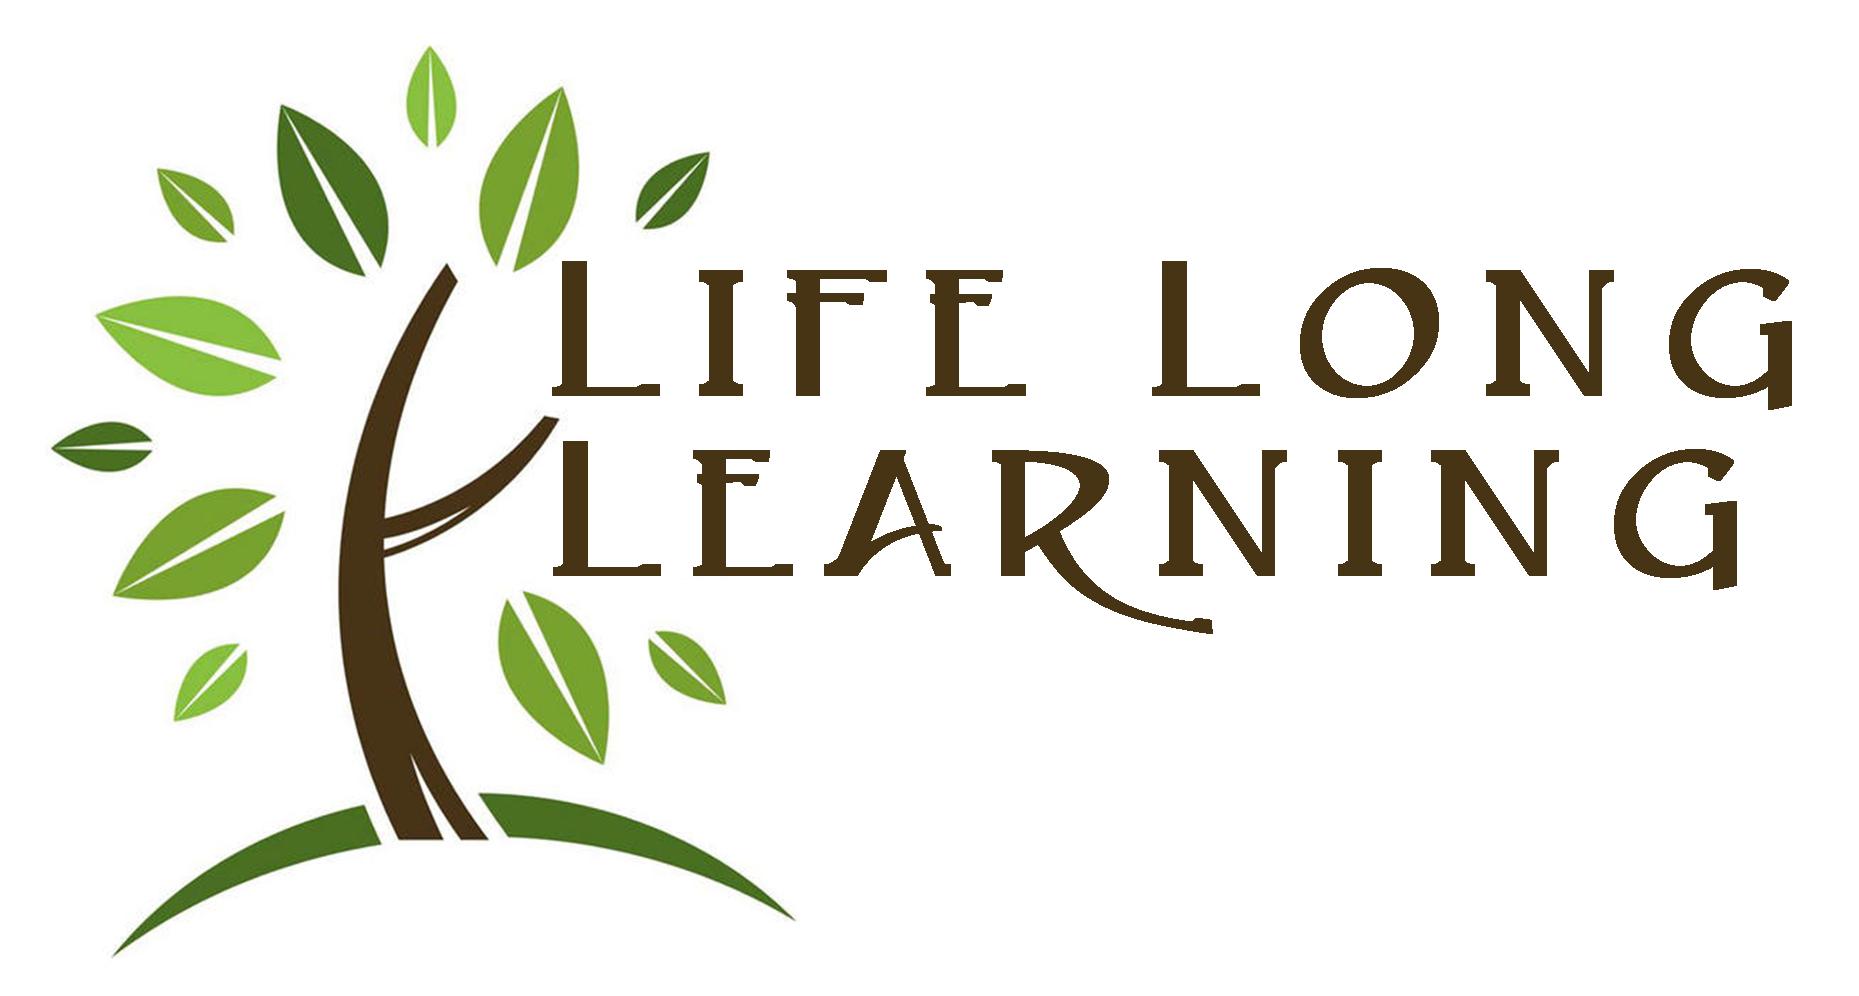 They lived long and life. Концепция lifelong Learning. Life Learning концепция. Концепция lifelong Learning. Непрерывное образование. Концепция lifelong Learning иконка.